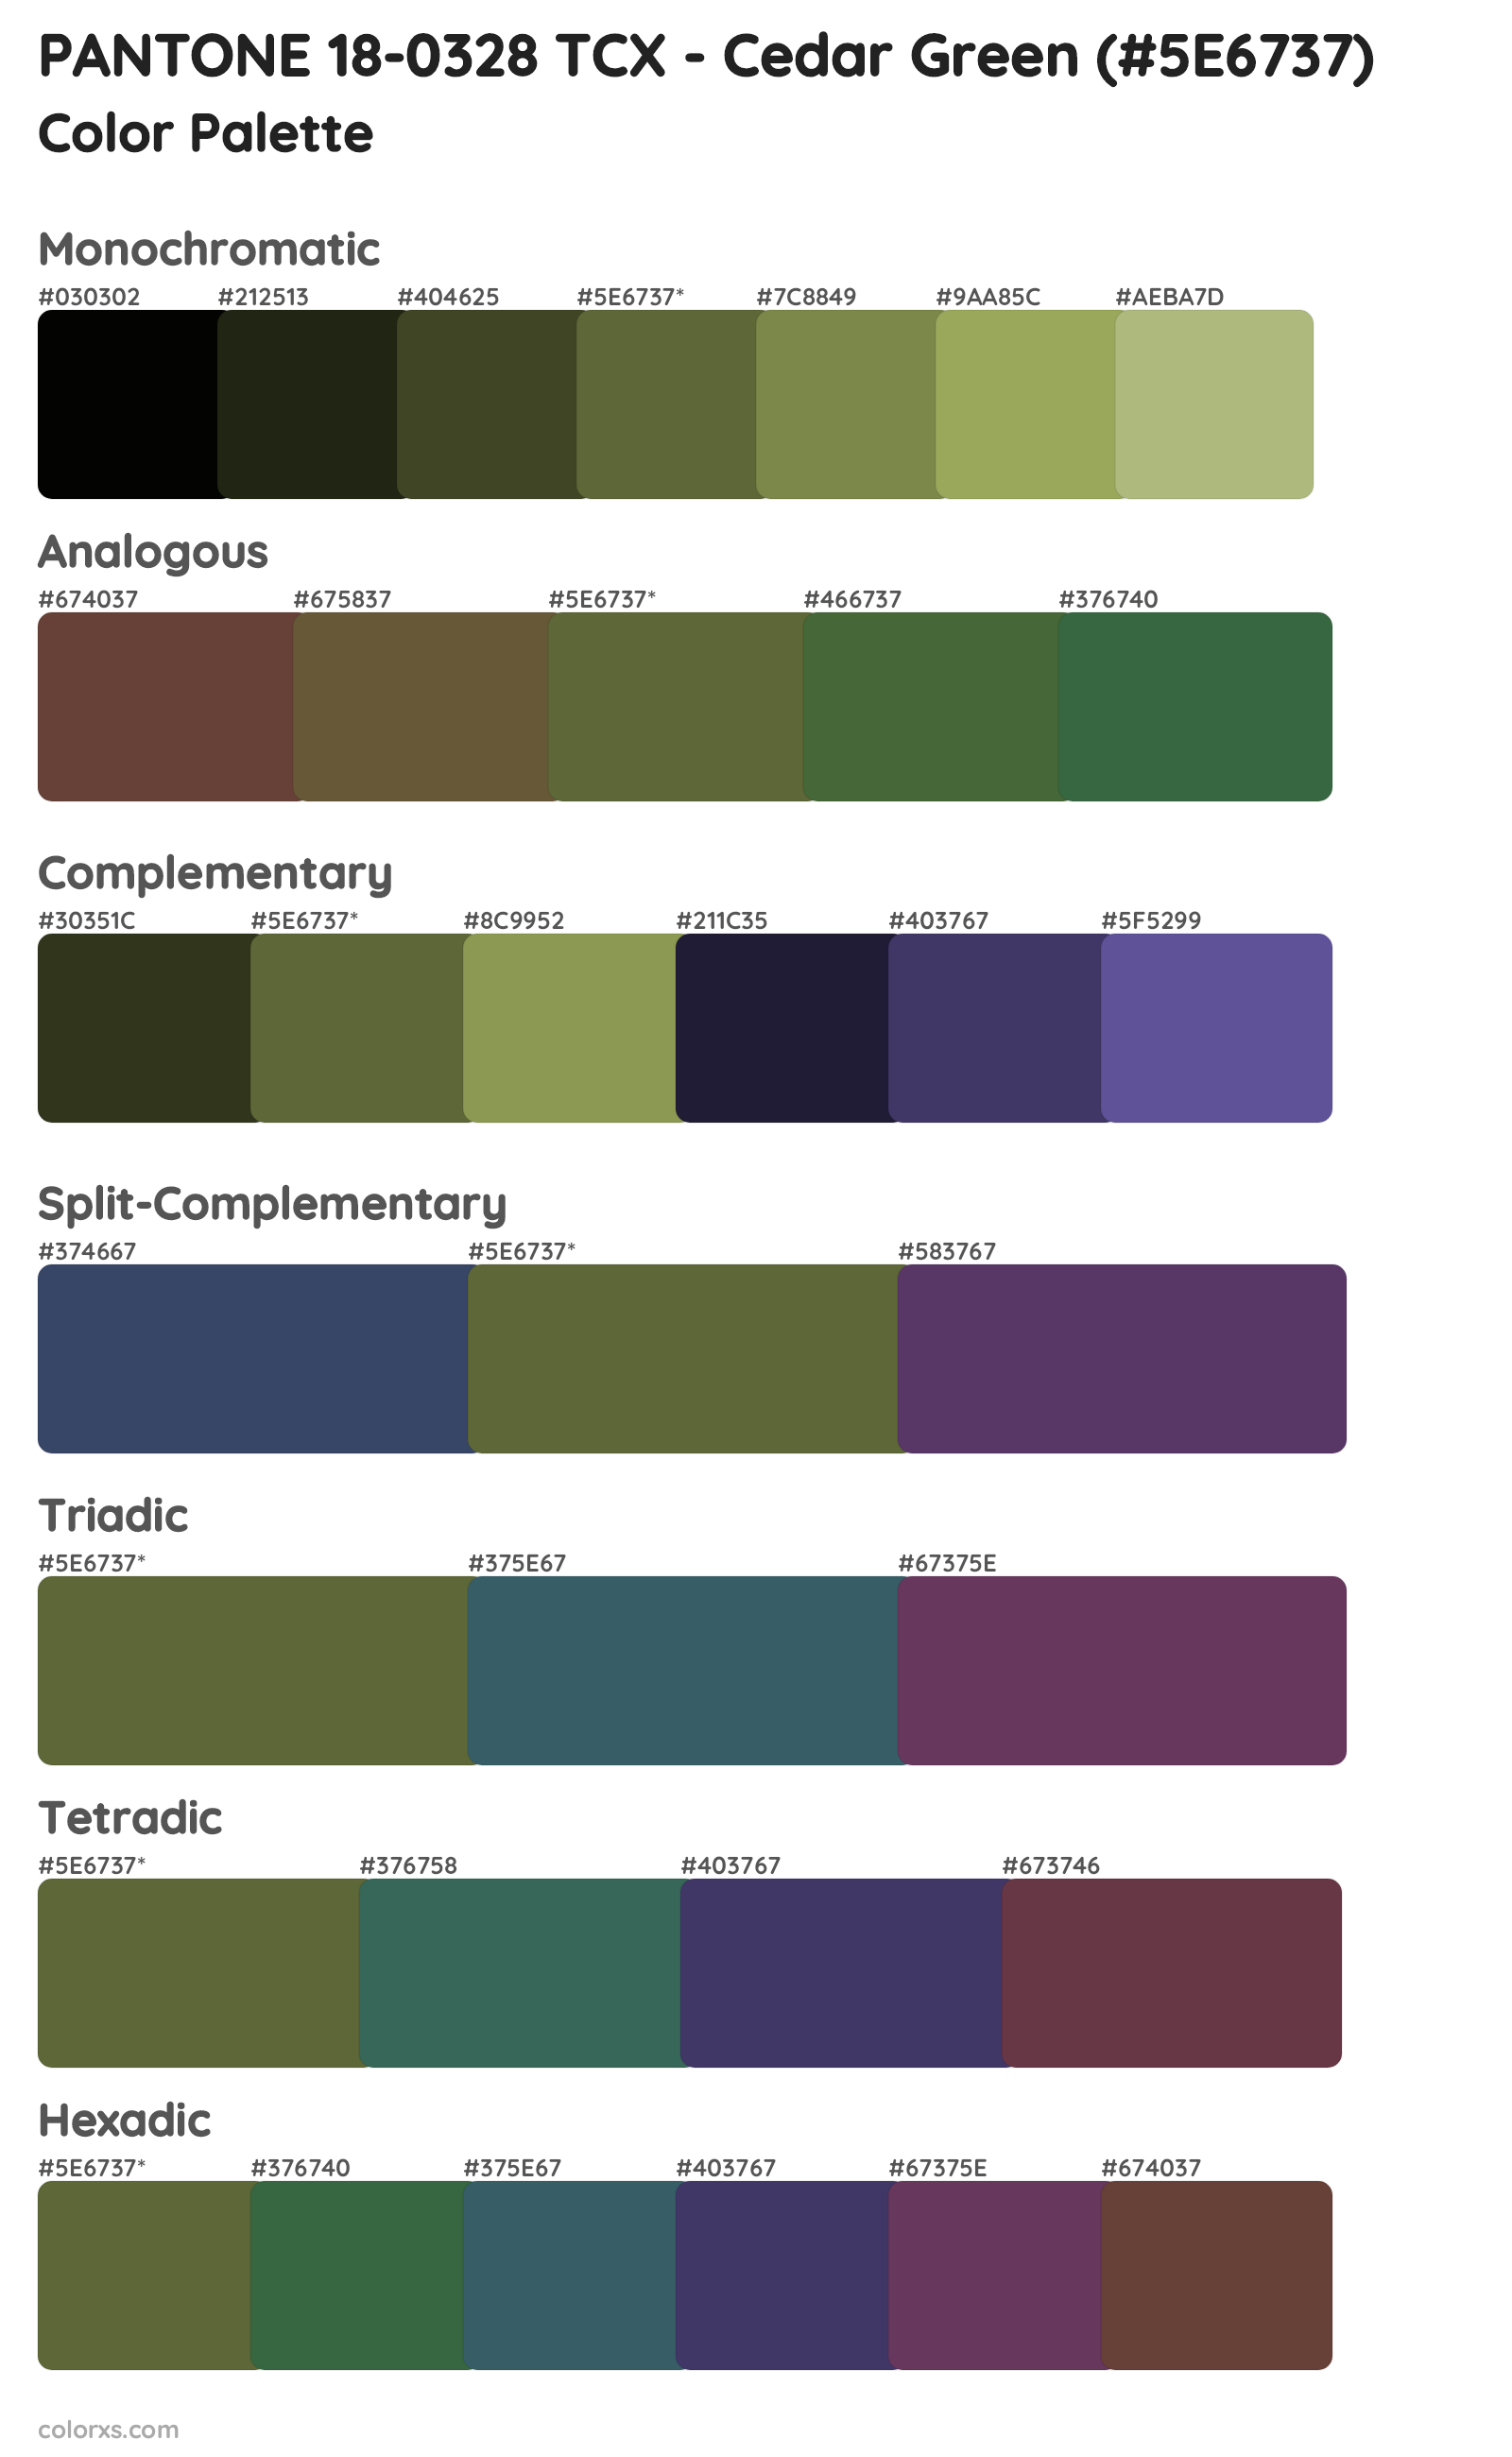 PANTONE 18-0328 TCX - Cedar Green Color Scheme Palettes